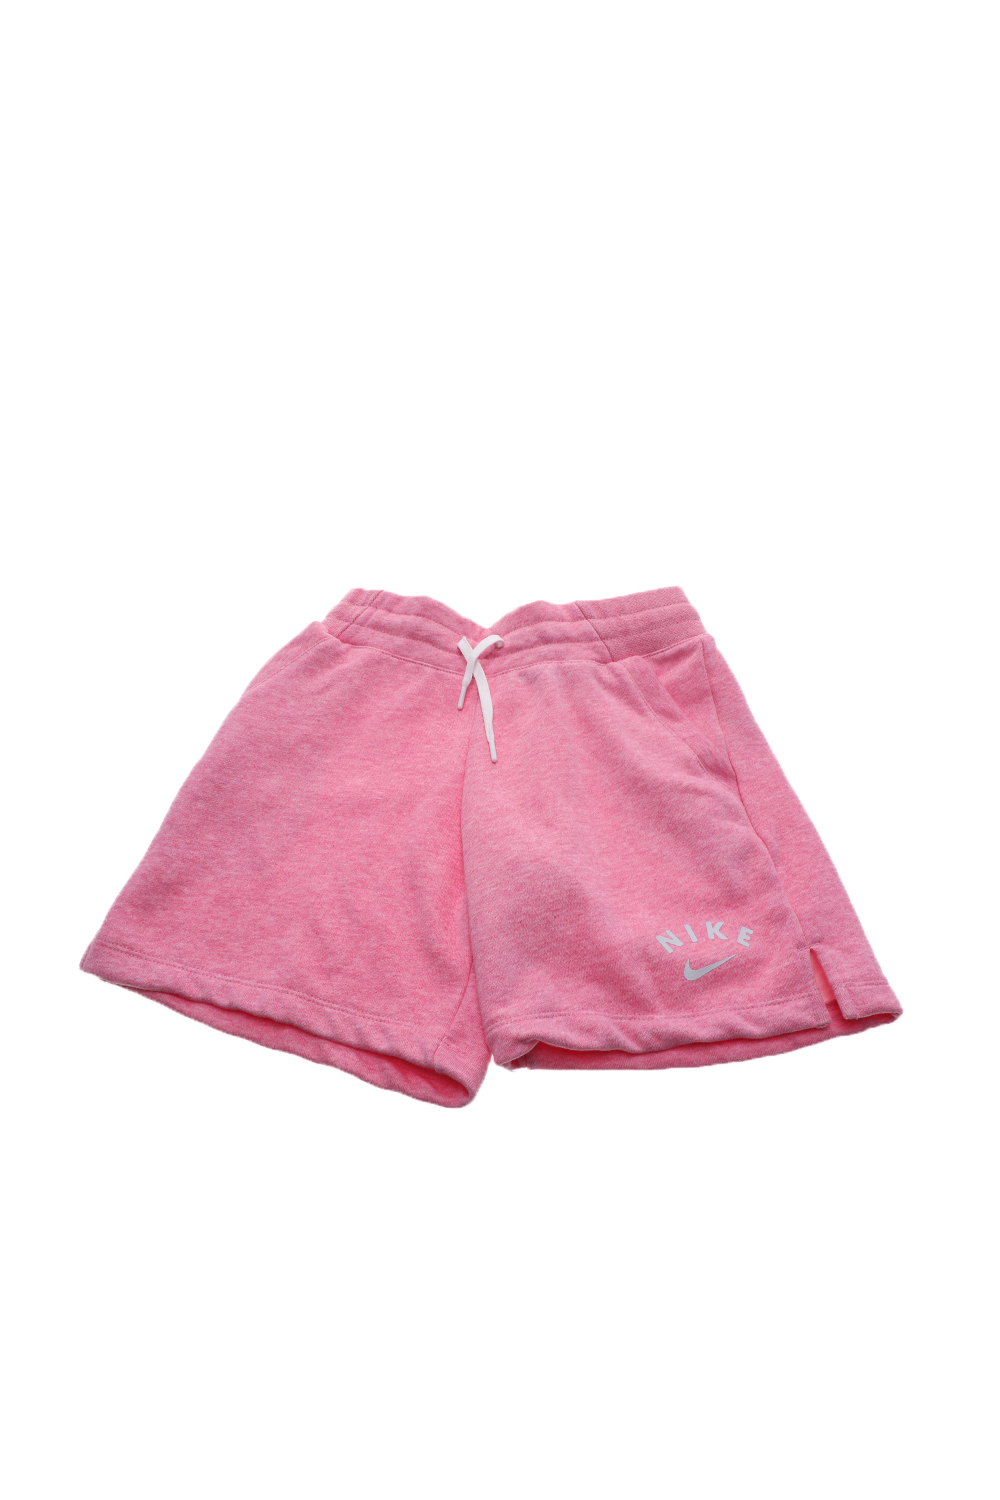 Παιδικά/Girls/Ρούχα/Σορτς-Βερμούδες NIKE - Παιδικό σορτς NIKE NSW SHORT FLC FB ροζ